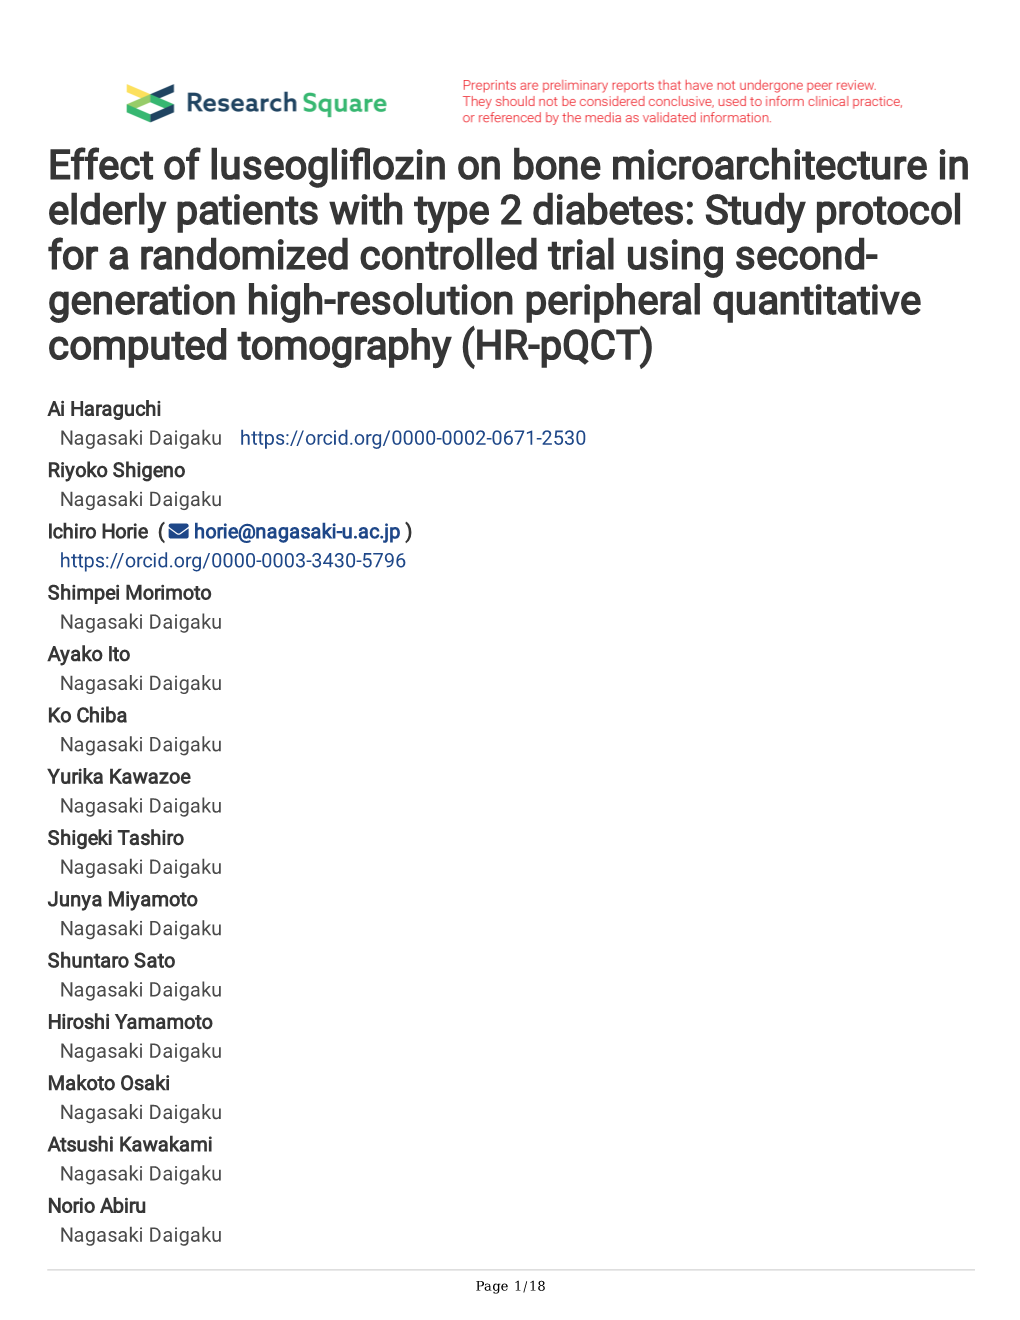 Effect of Luseogliflozin on Bone Microarchitecture in Elderly Patients with Type 2 Diabetes